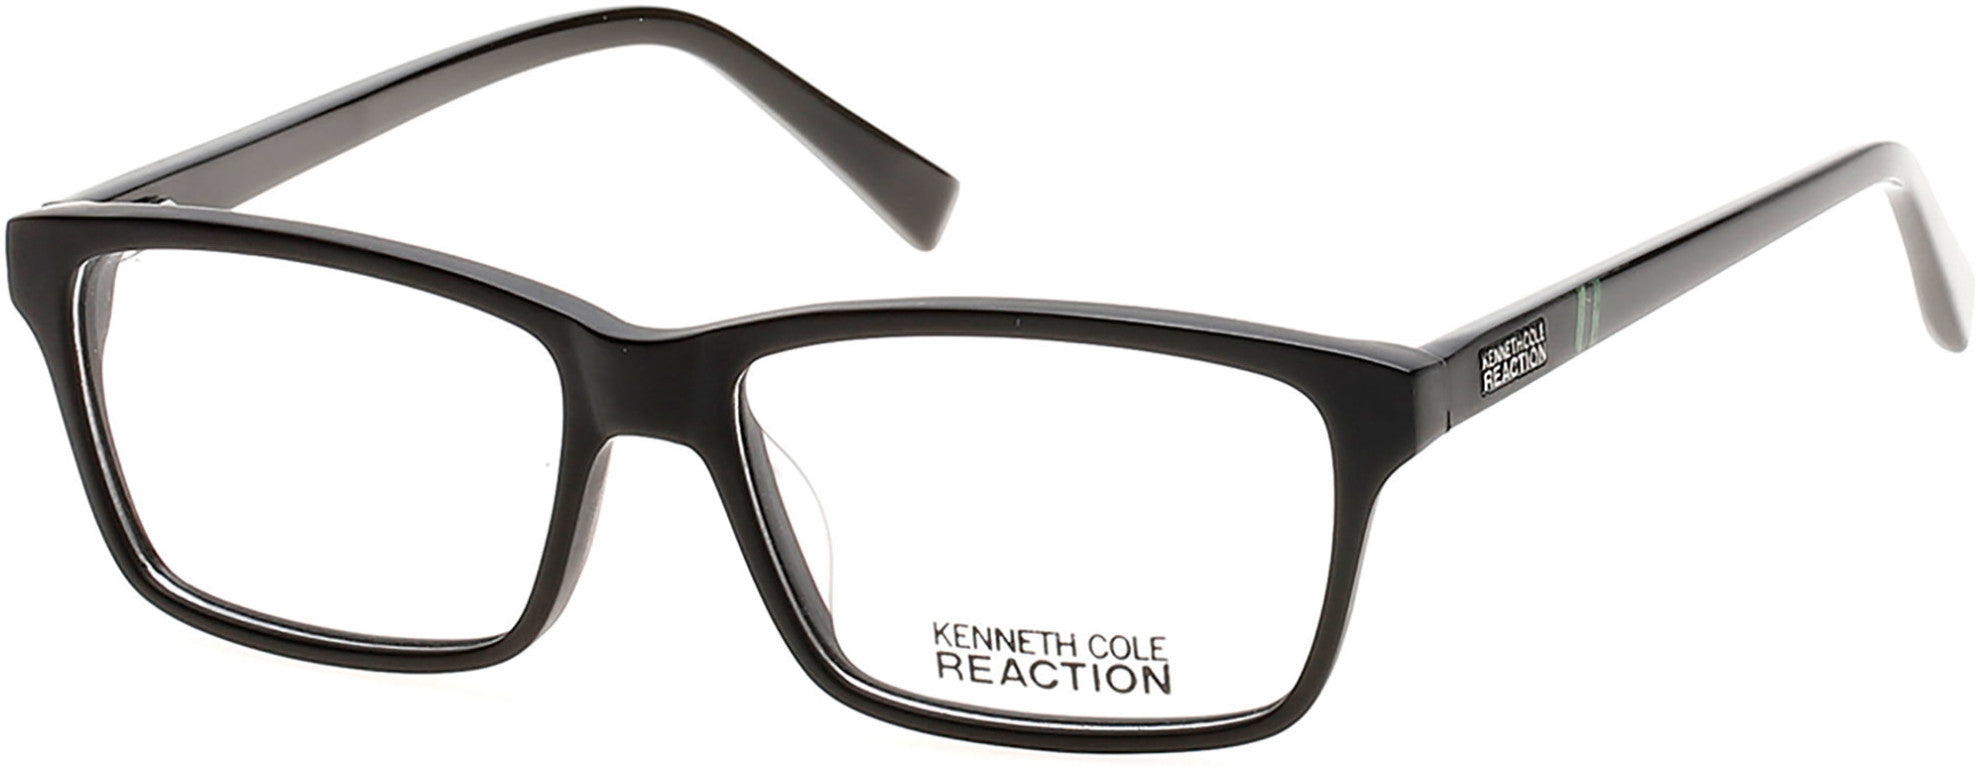 Kenneth Cole New York,Kenneth Cole Reaction KC0777 Eyeglasses 002-002 - Matte Black